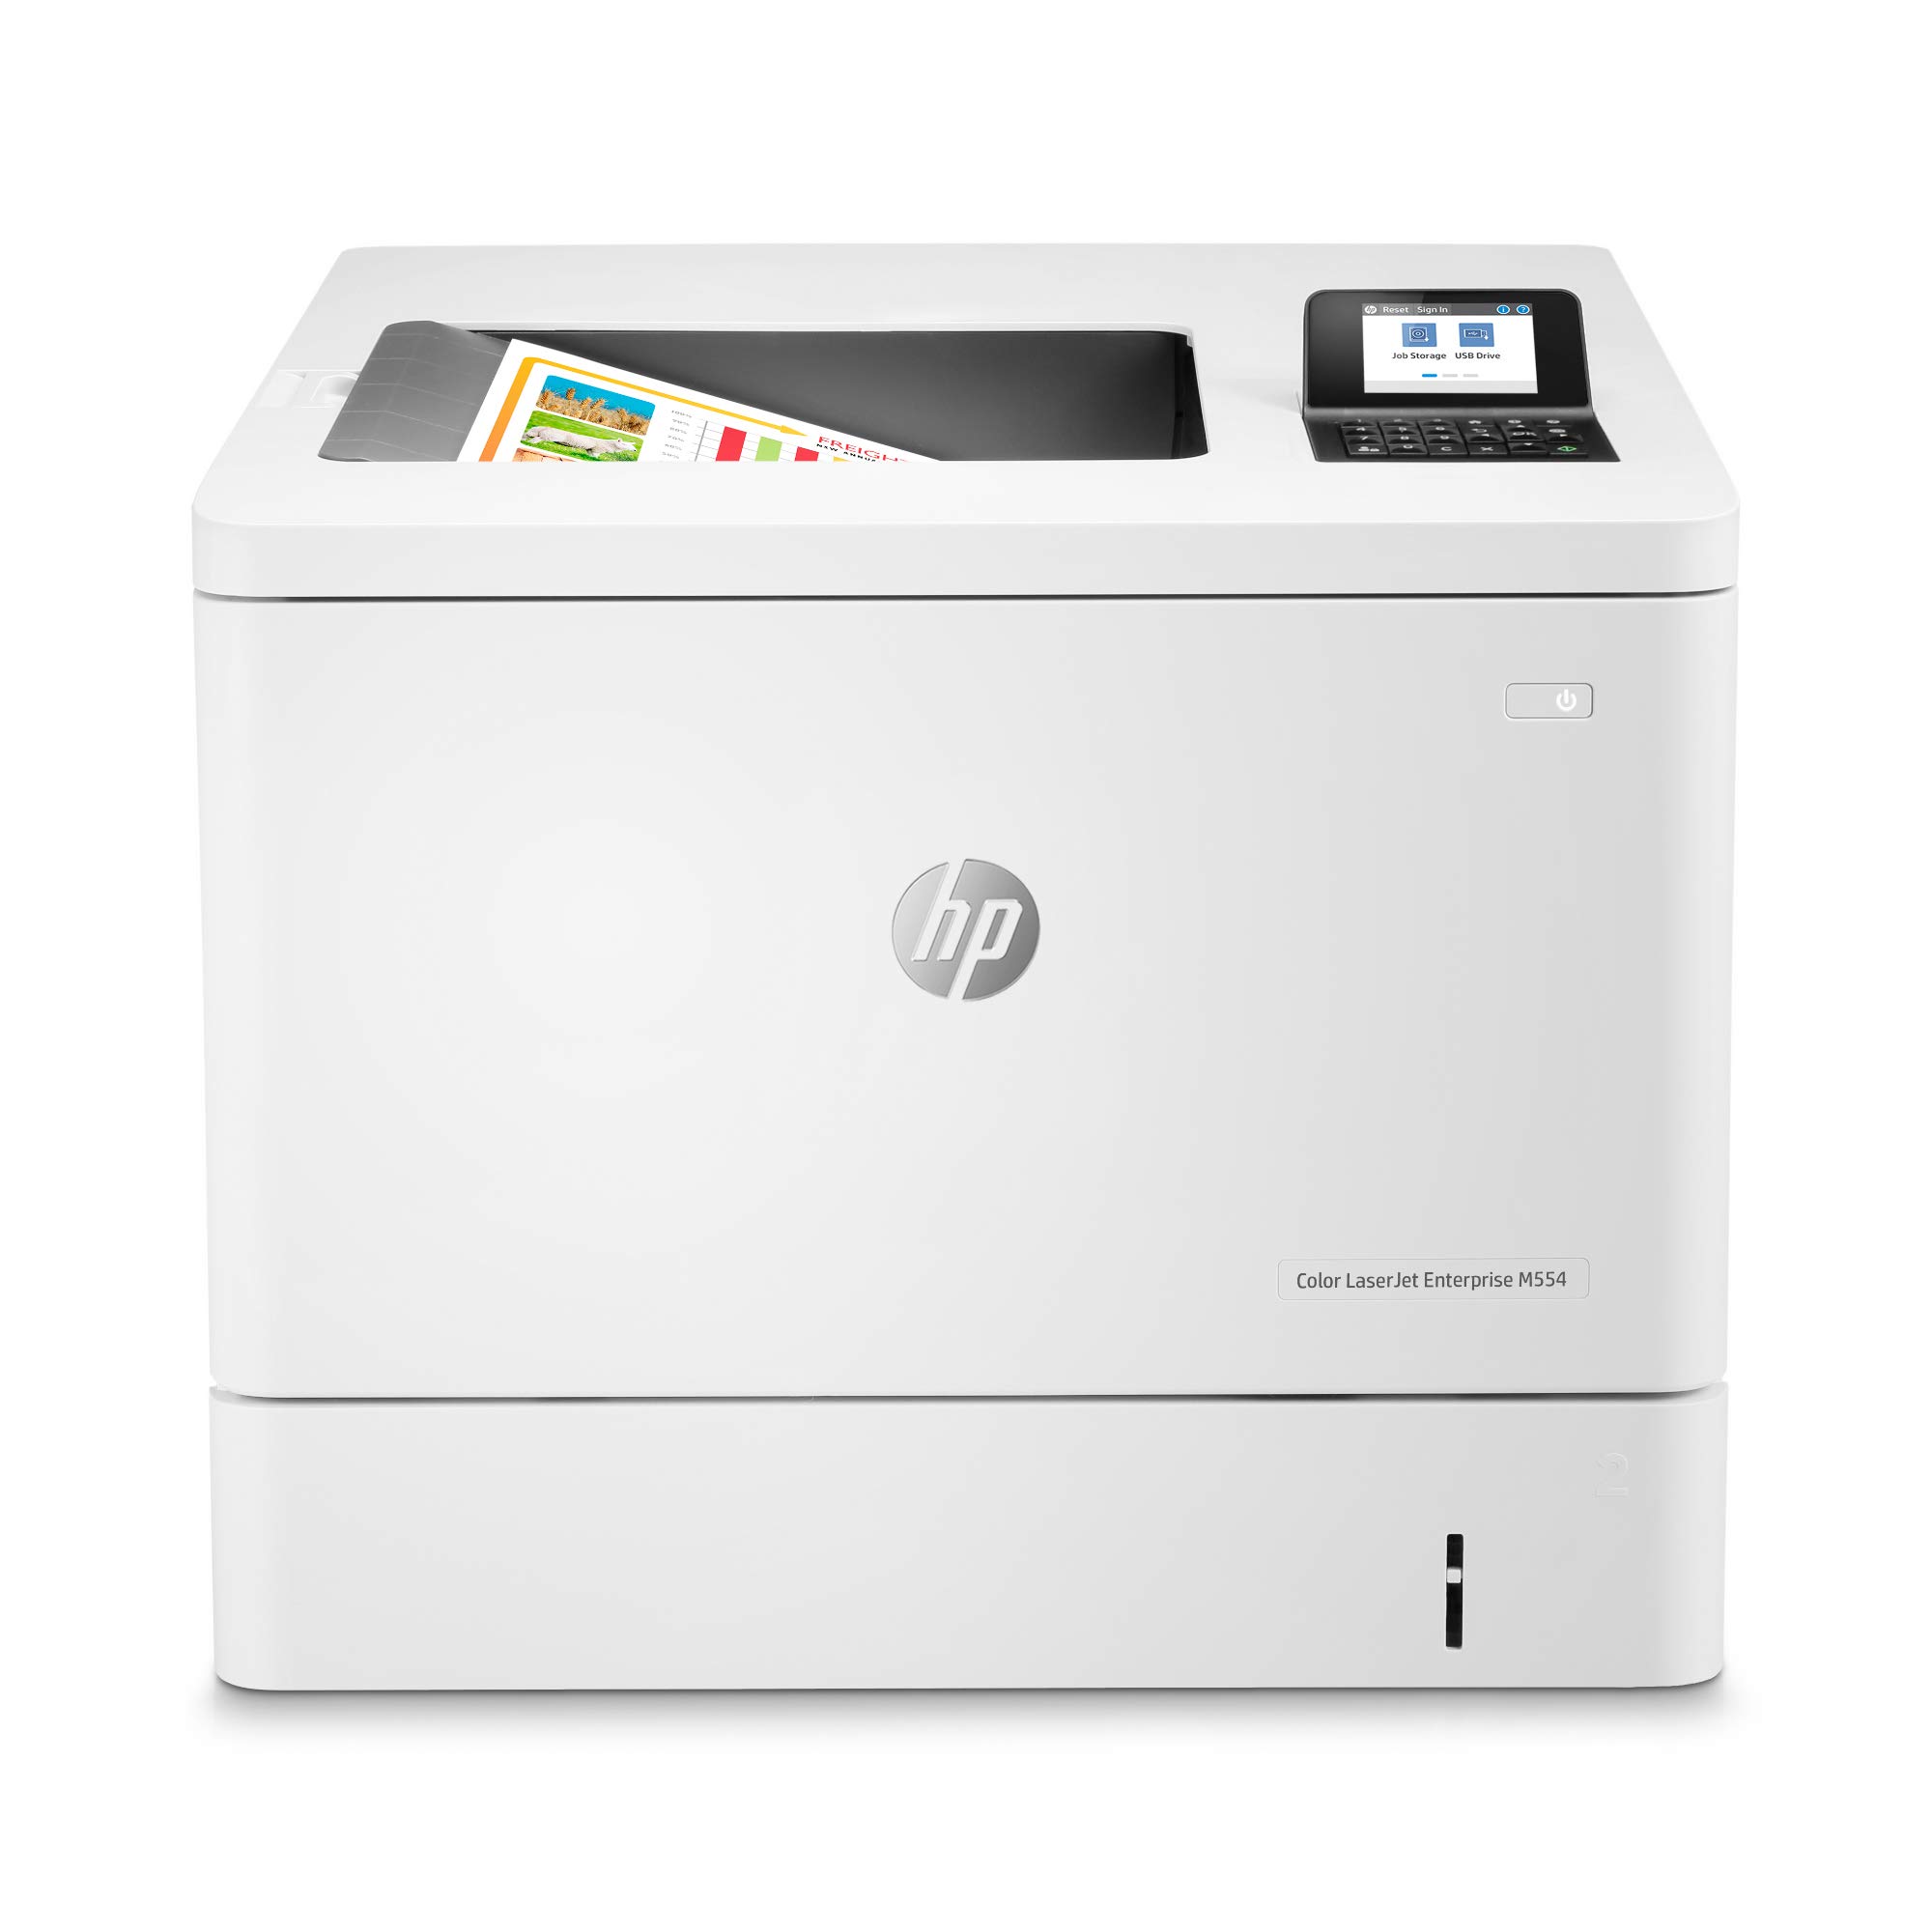 HP طابعة Color LaserJet Enterprise M554dn المزدوجة (7ZU...